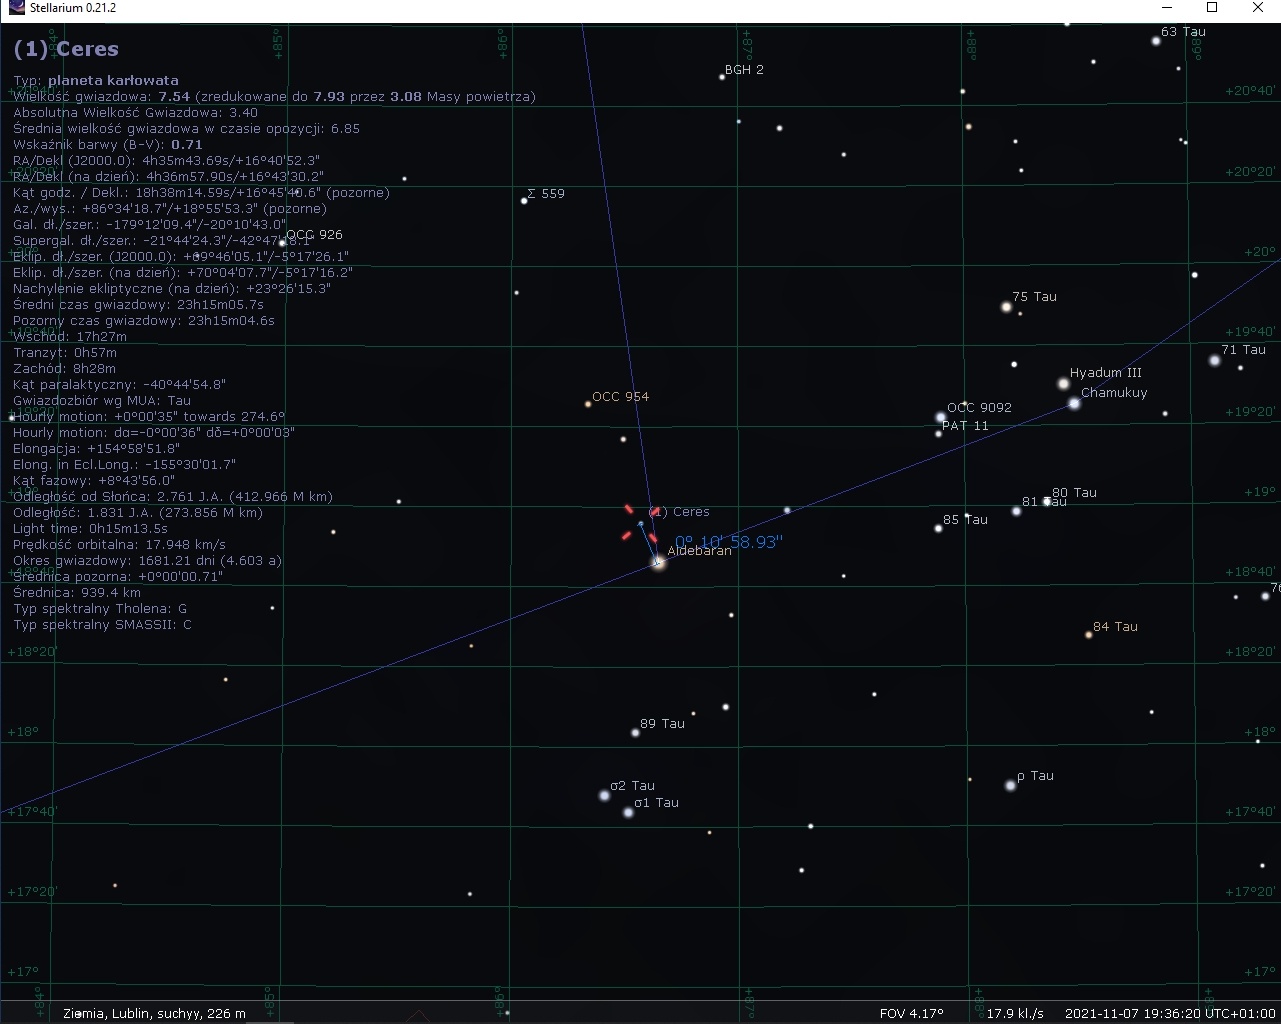 Ceres-Aldebaran_11-minut_07-11-2021.jpg.79a27c7cf826c7af3c108528a015af86.jpg